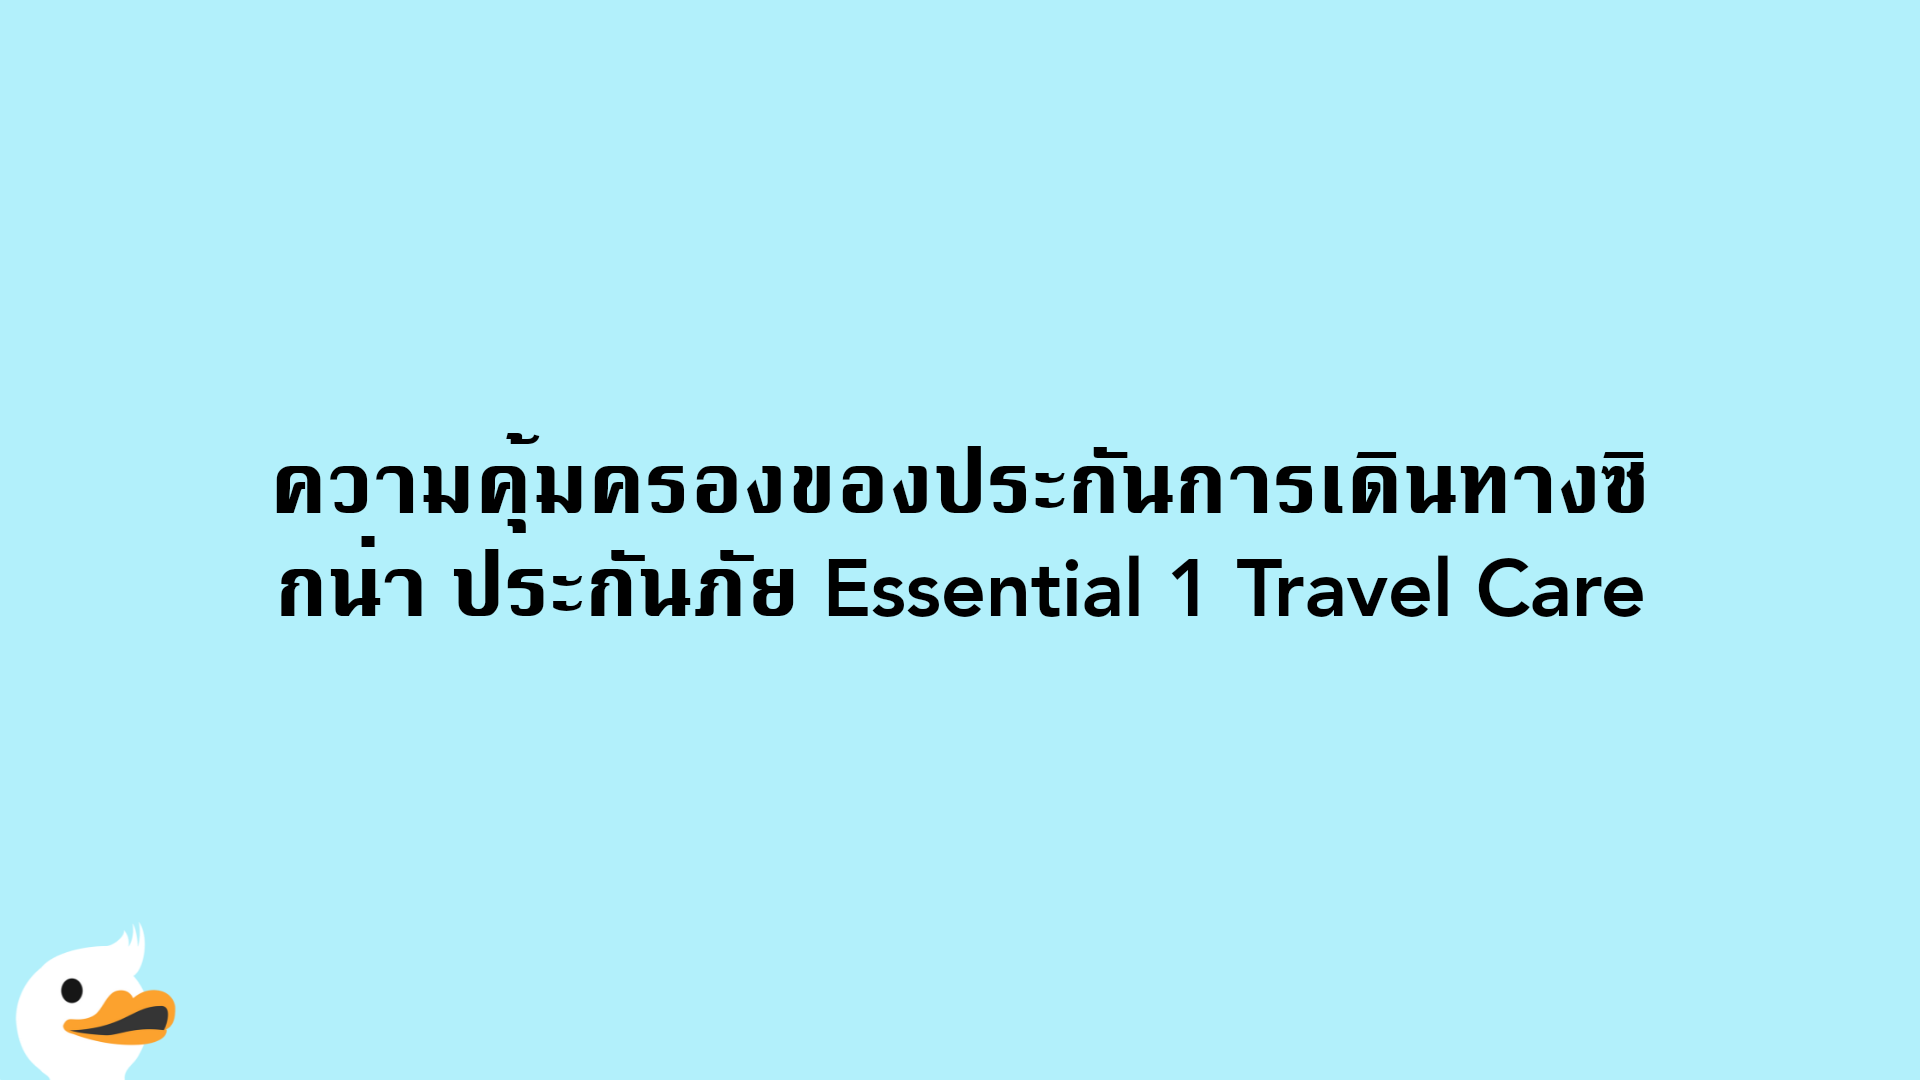 ความคุ้มครองของประกันการเดินทางซิกน่า ประกันภัย Essential 1 Travel Care